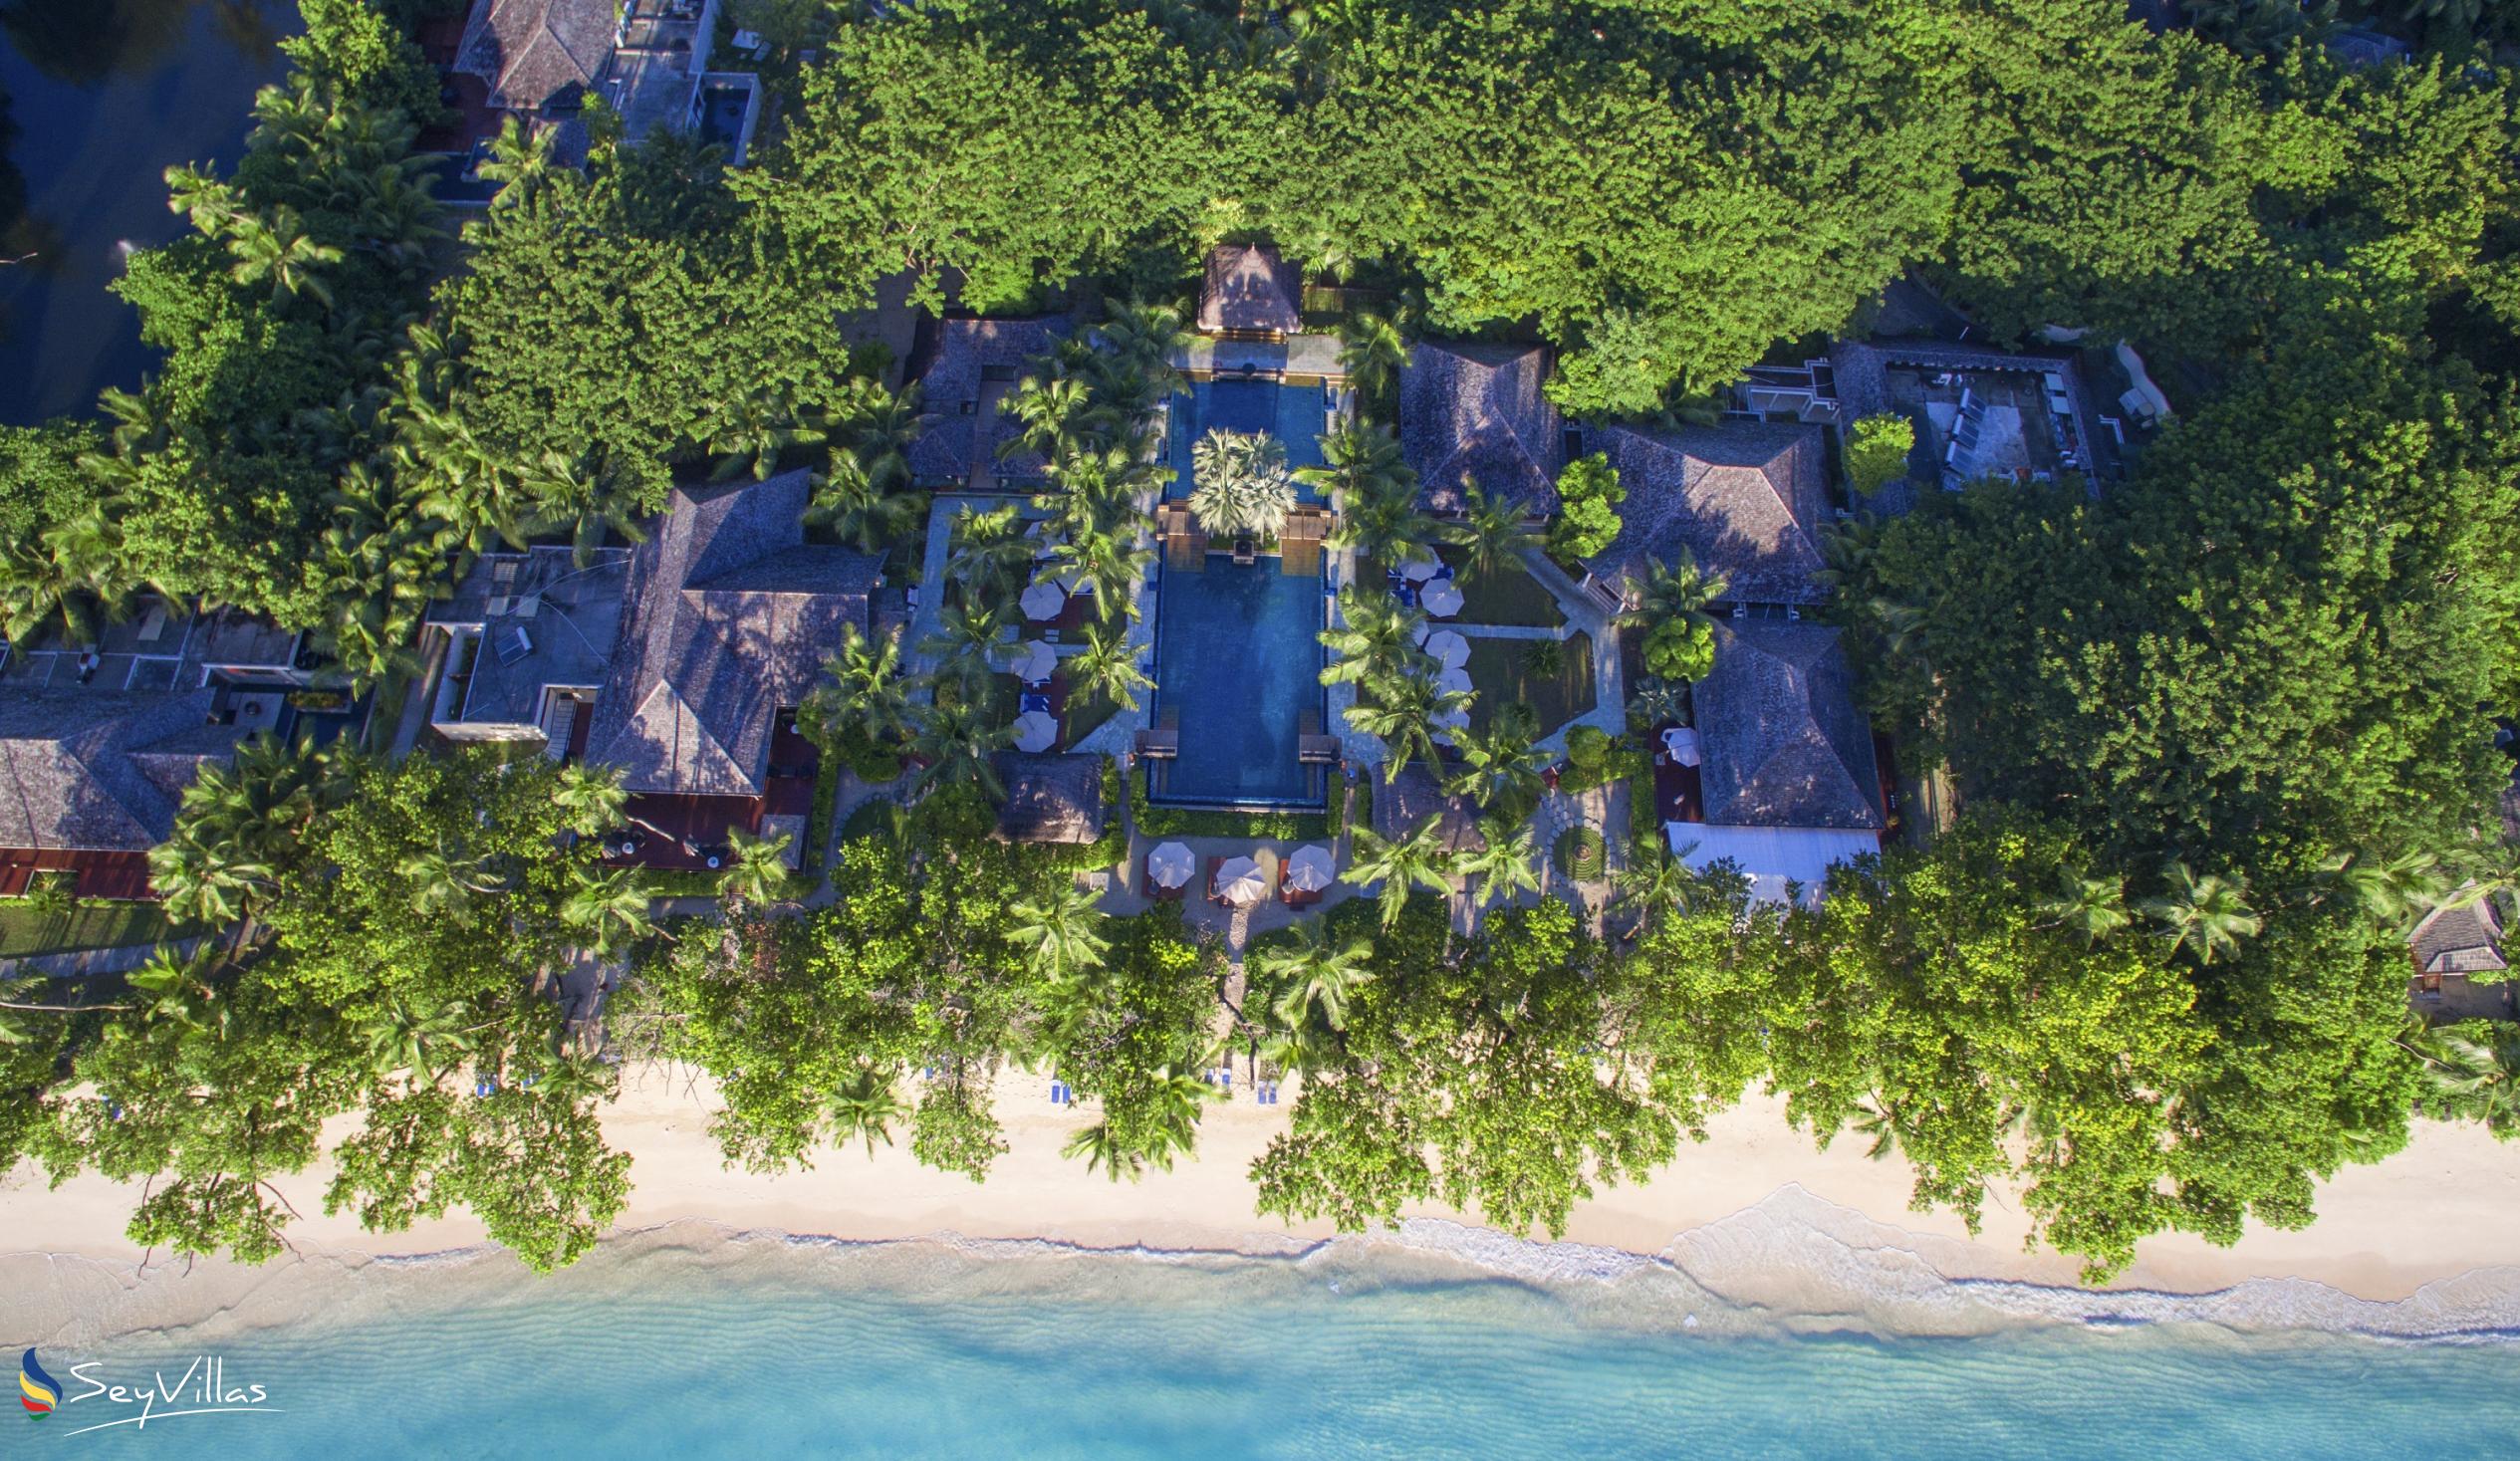 Foto 1: Hilton Seychelles Labriz Resort & Spa - Aussenbereich - Silhouette Island (Seychellen)